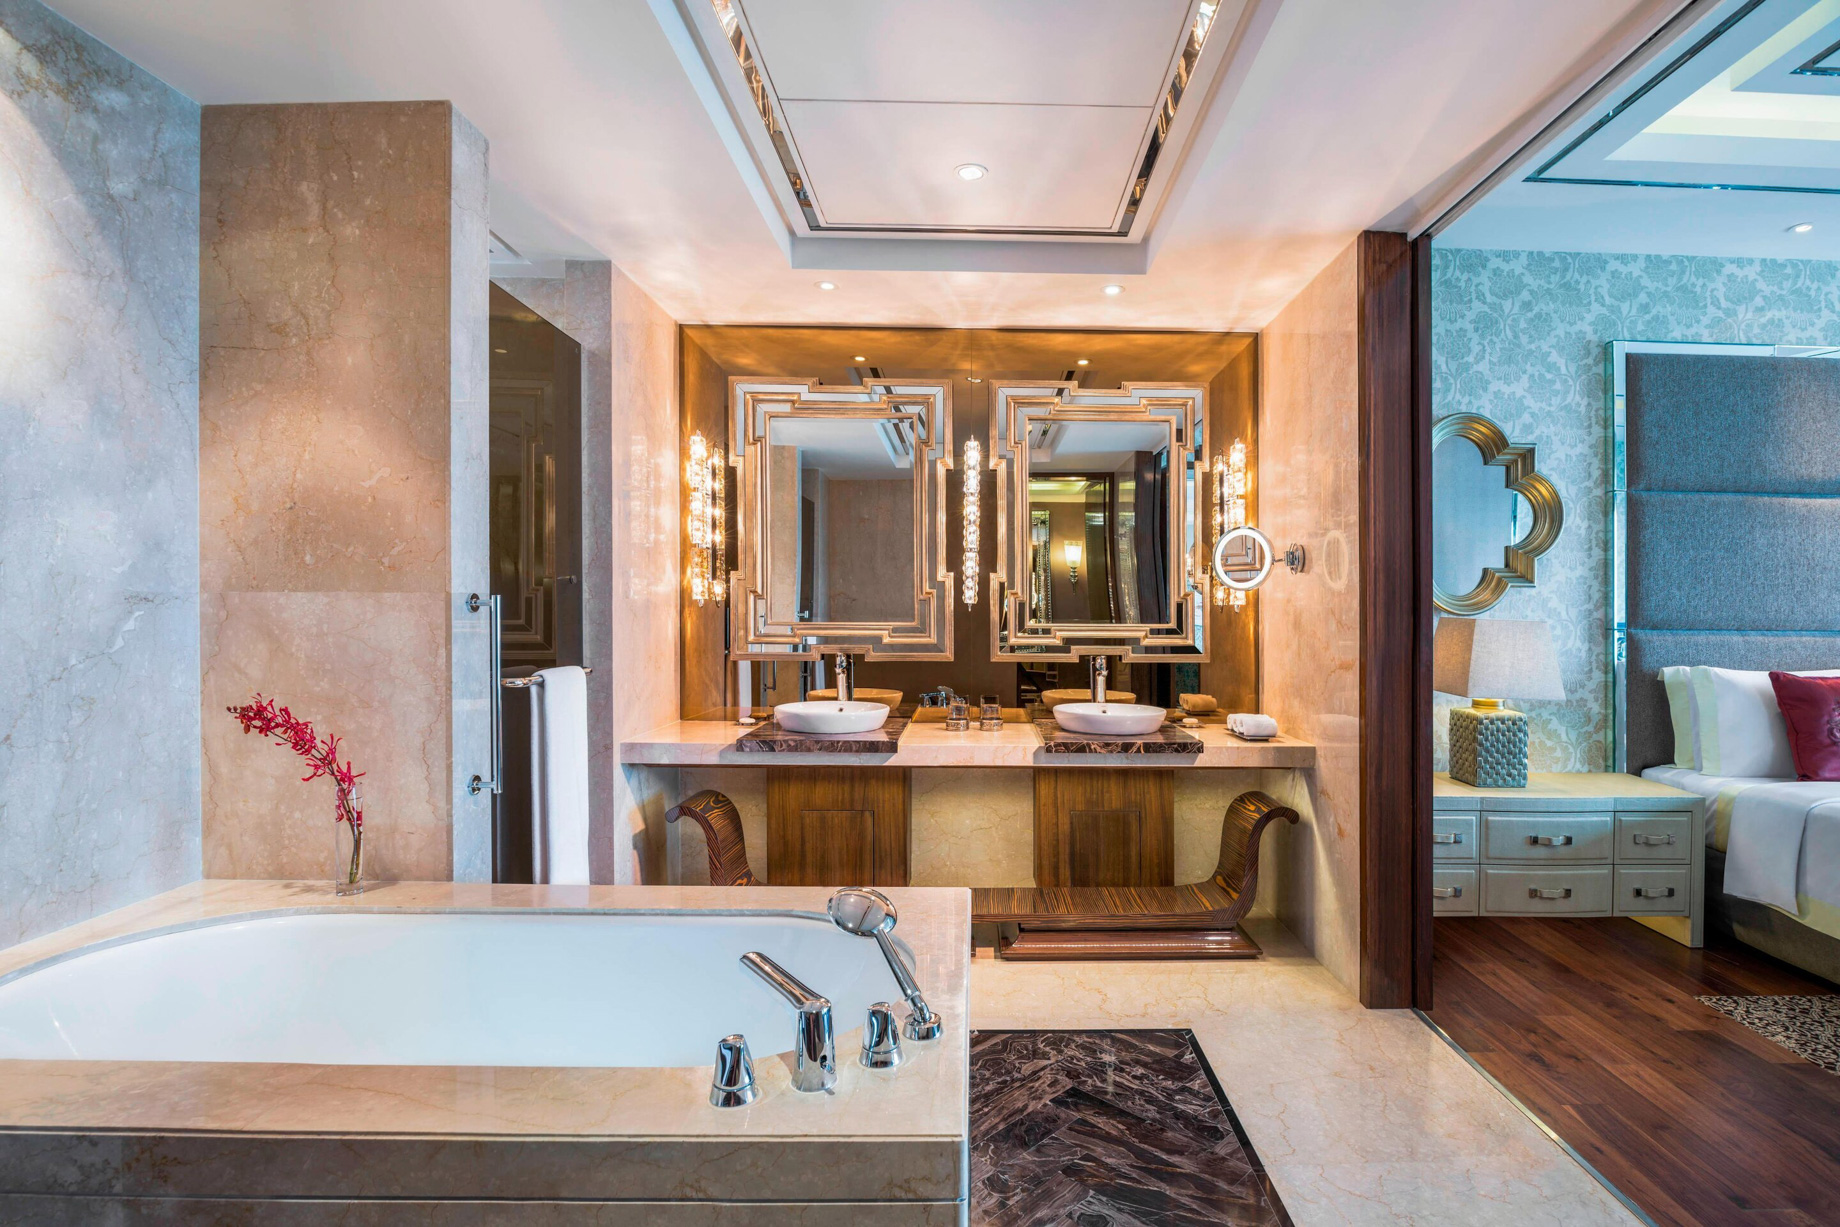 The St. Regis Mumbai Hotel – Mumbai, India – Metropolitan Suite Bathroom Tub